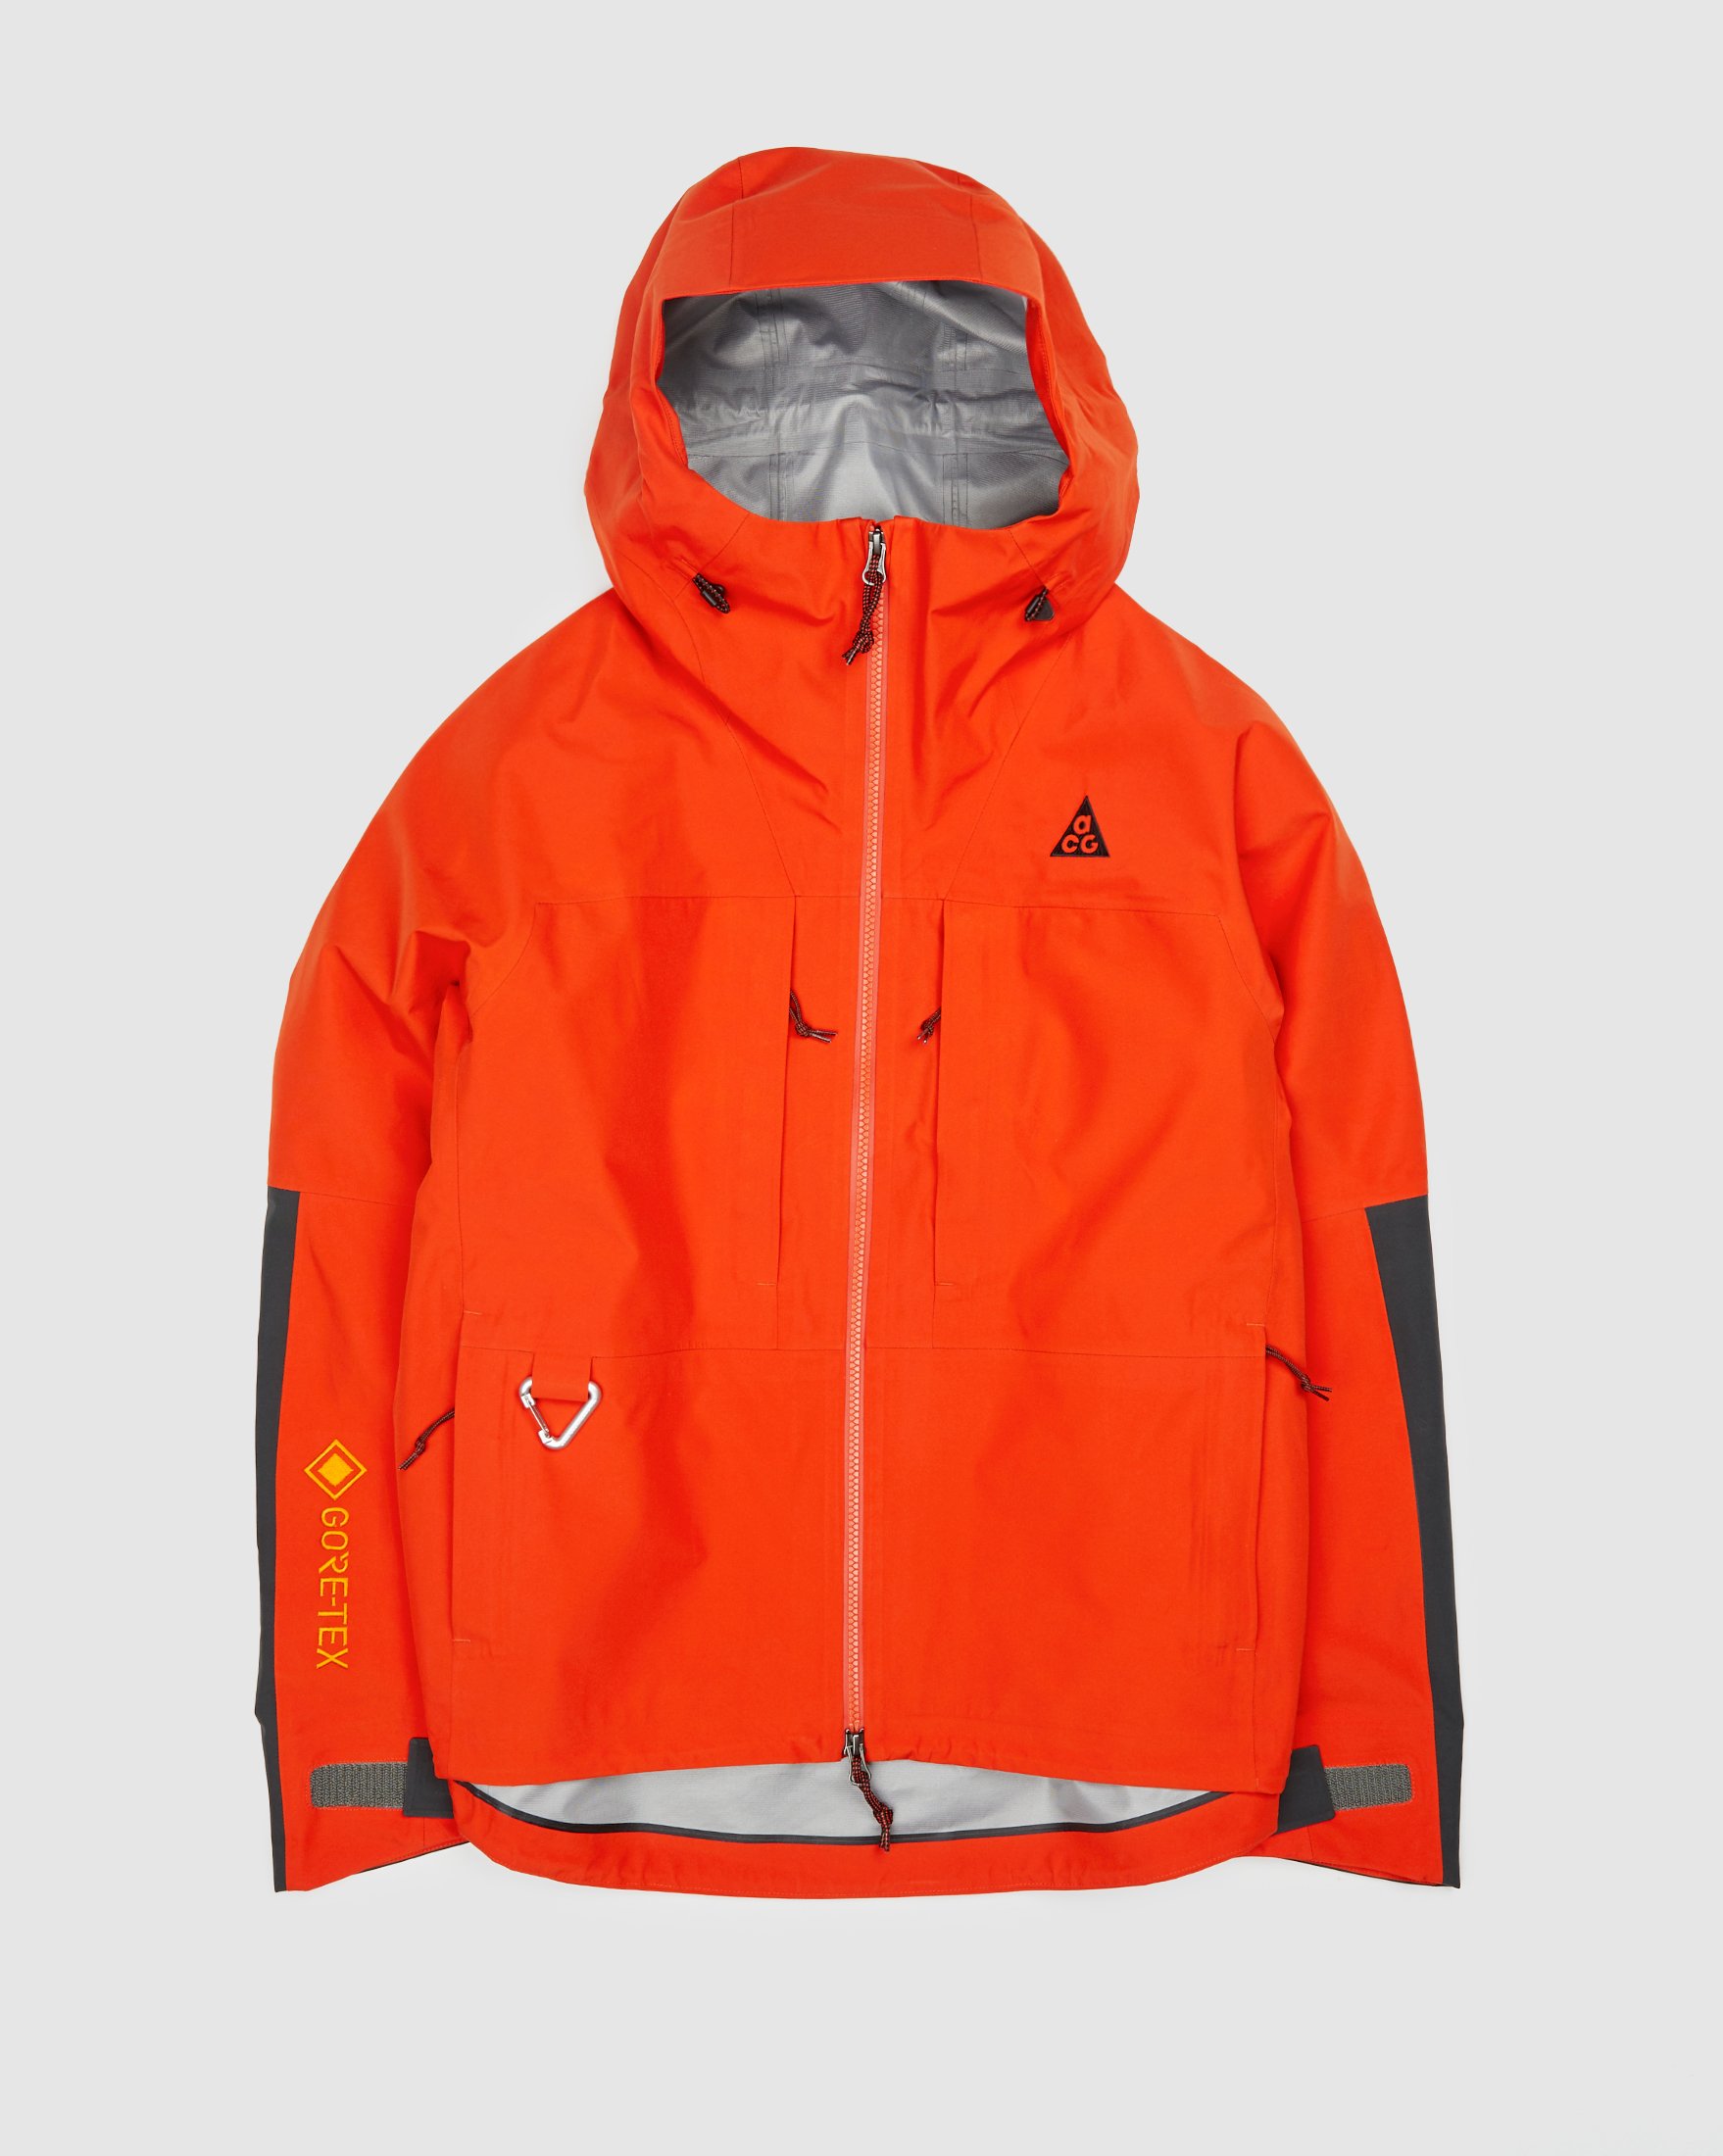 Nike ACG - Gore-Tex "Misery Ridge" Men's Jacket Orange - Clothing - Orange - Image 1